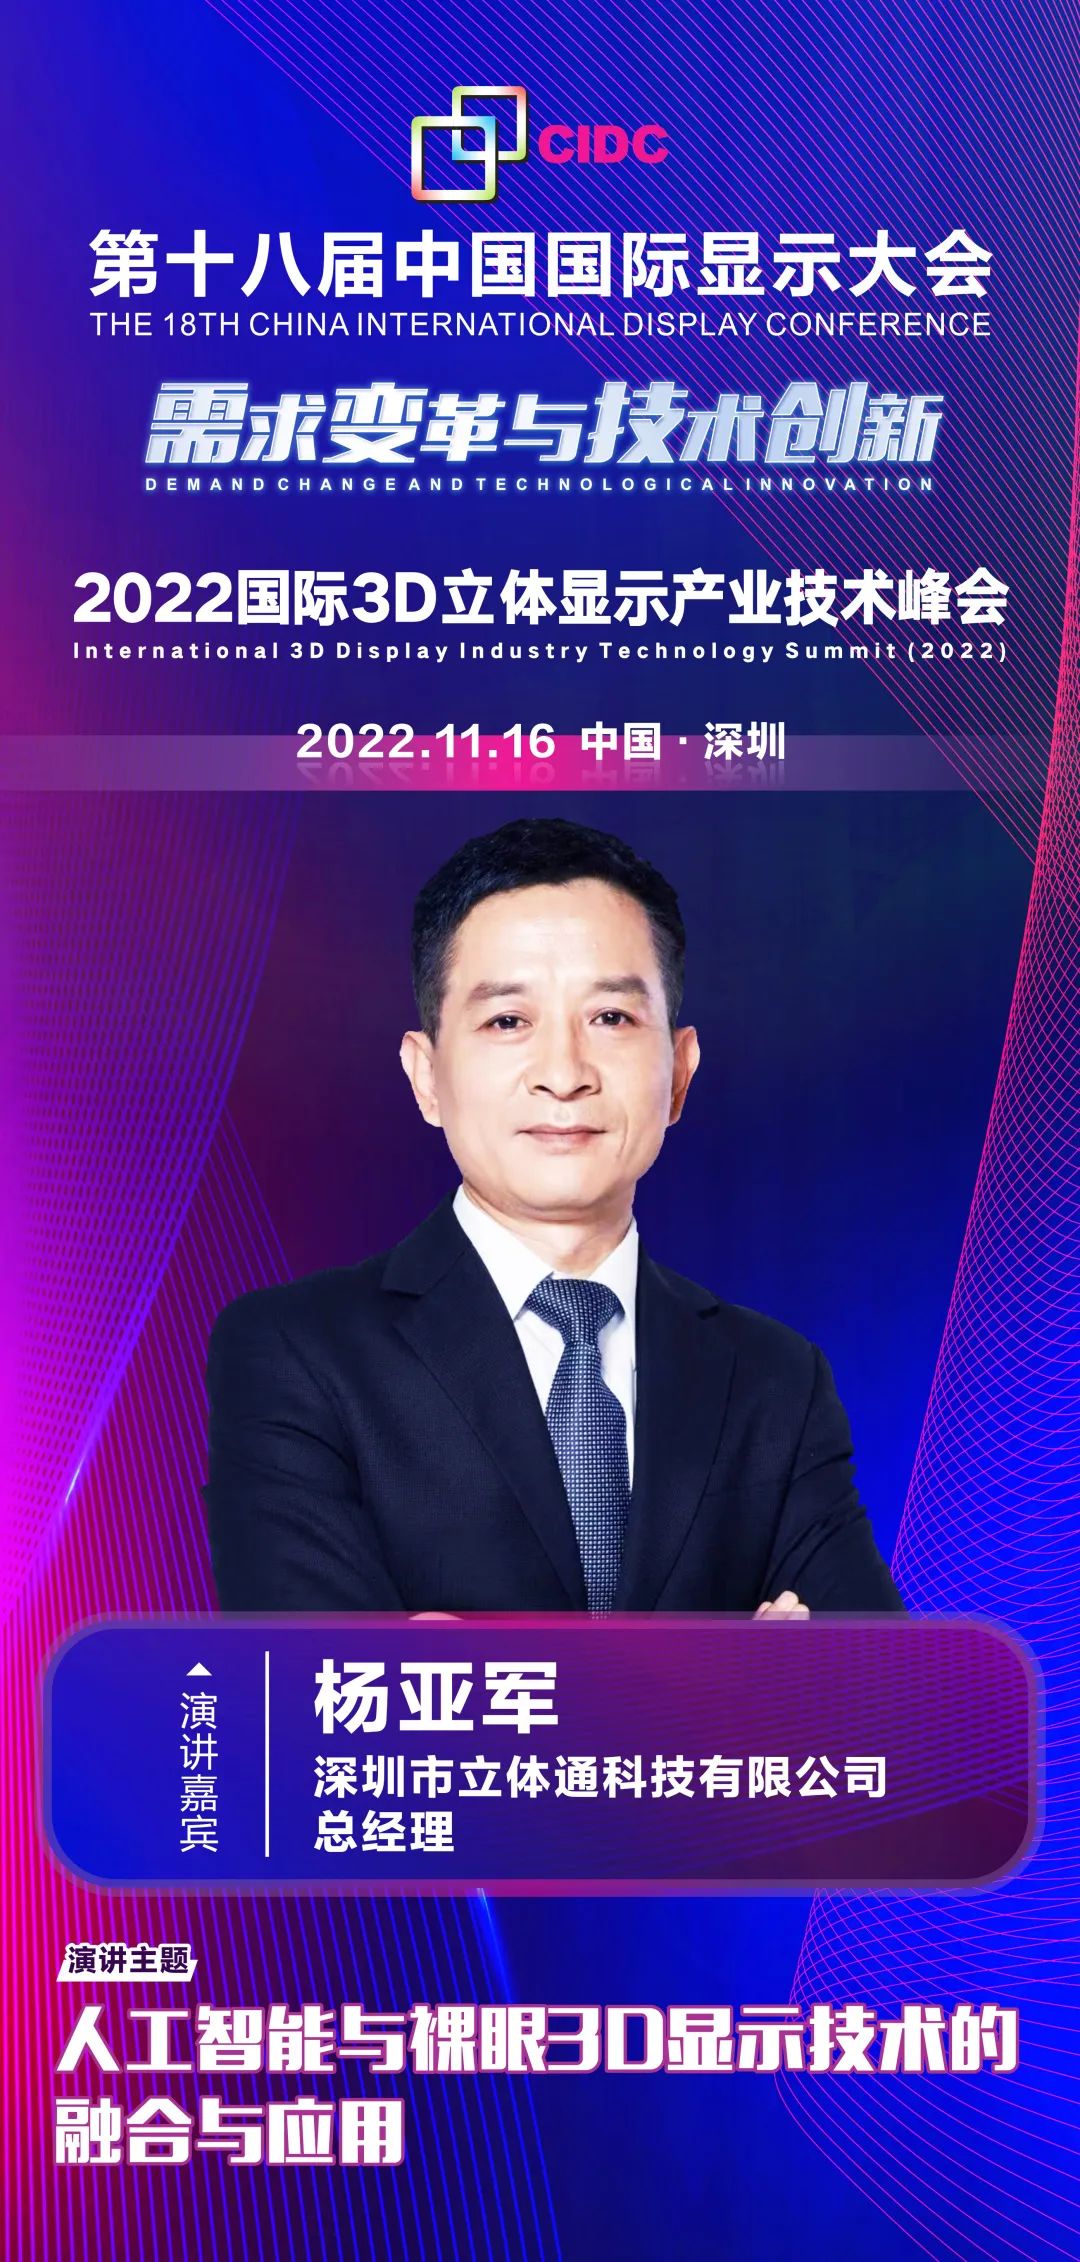 11/16会议预告 | 深圳市立体通科技有限公司总经理杨亚军确认出席第十八届中国国际显示大会（CIDC2022）